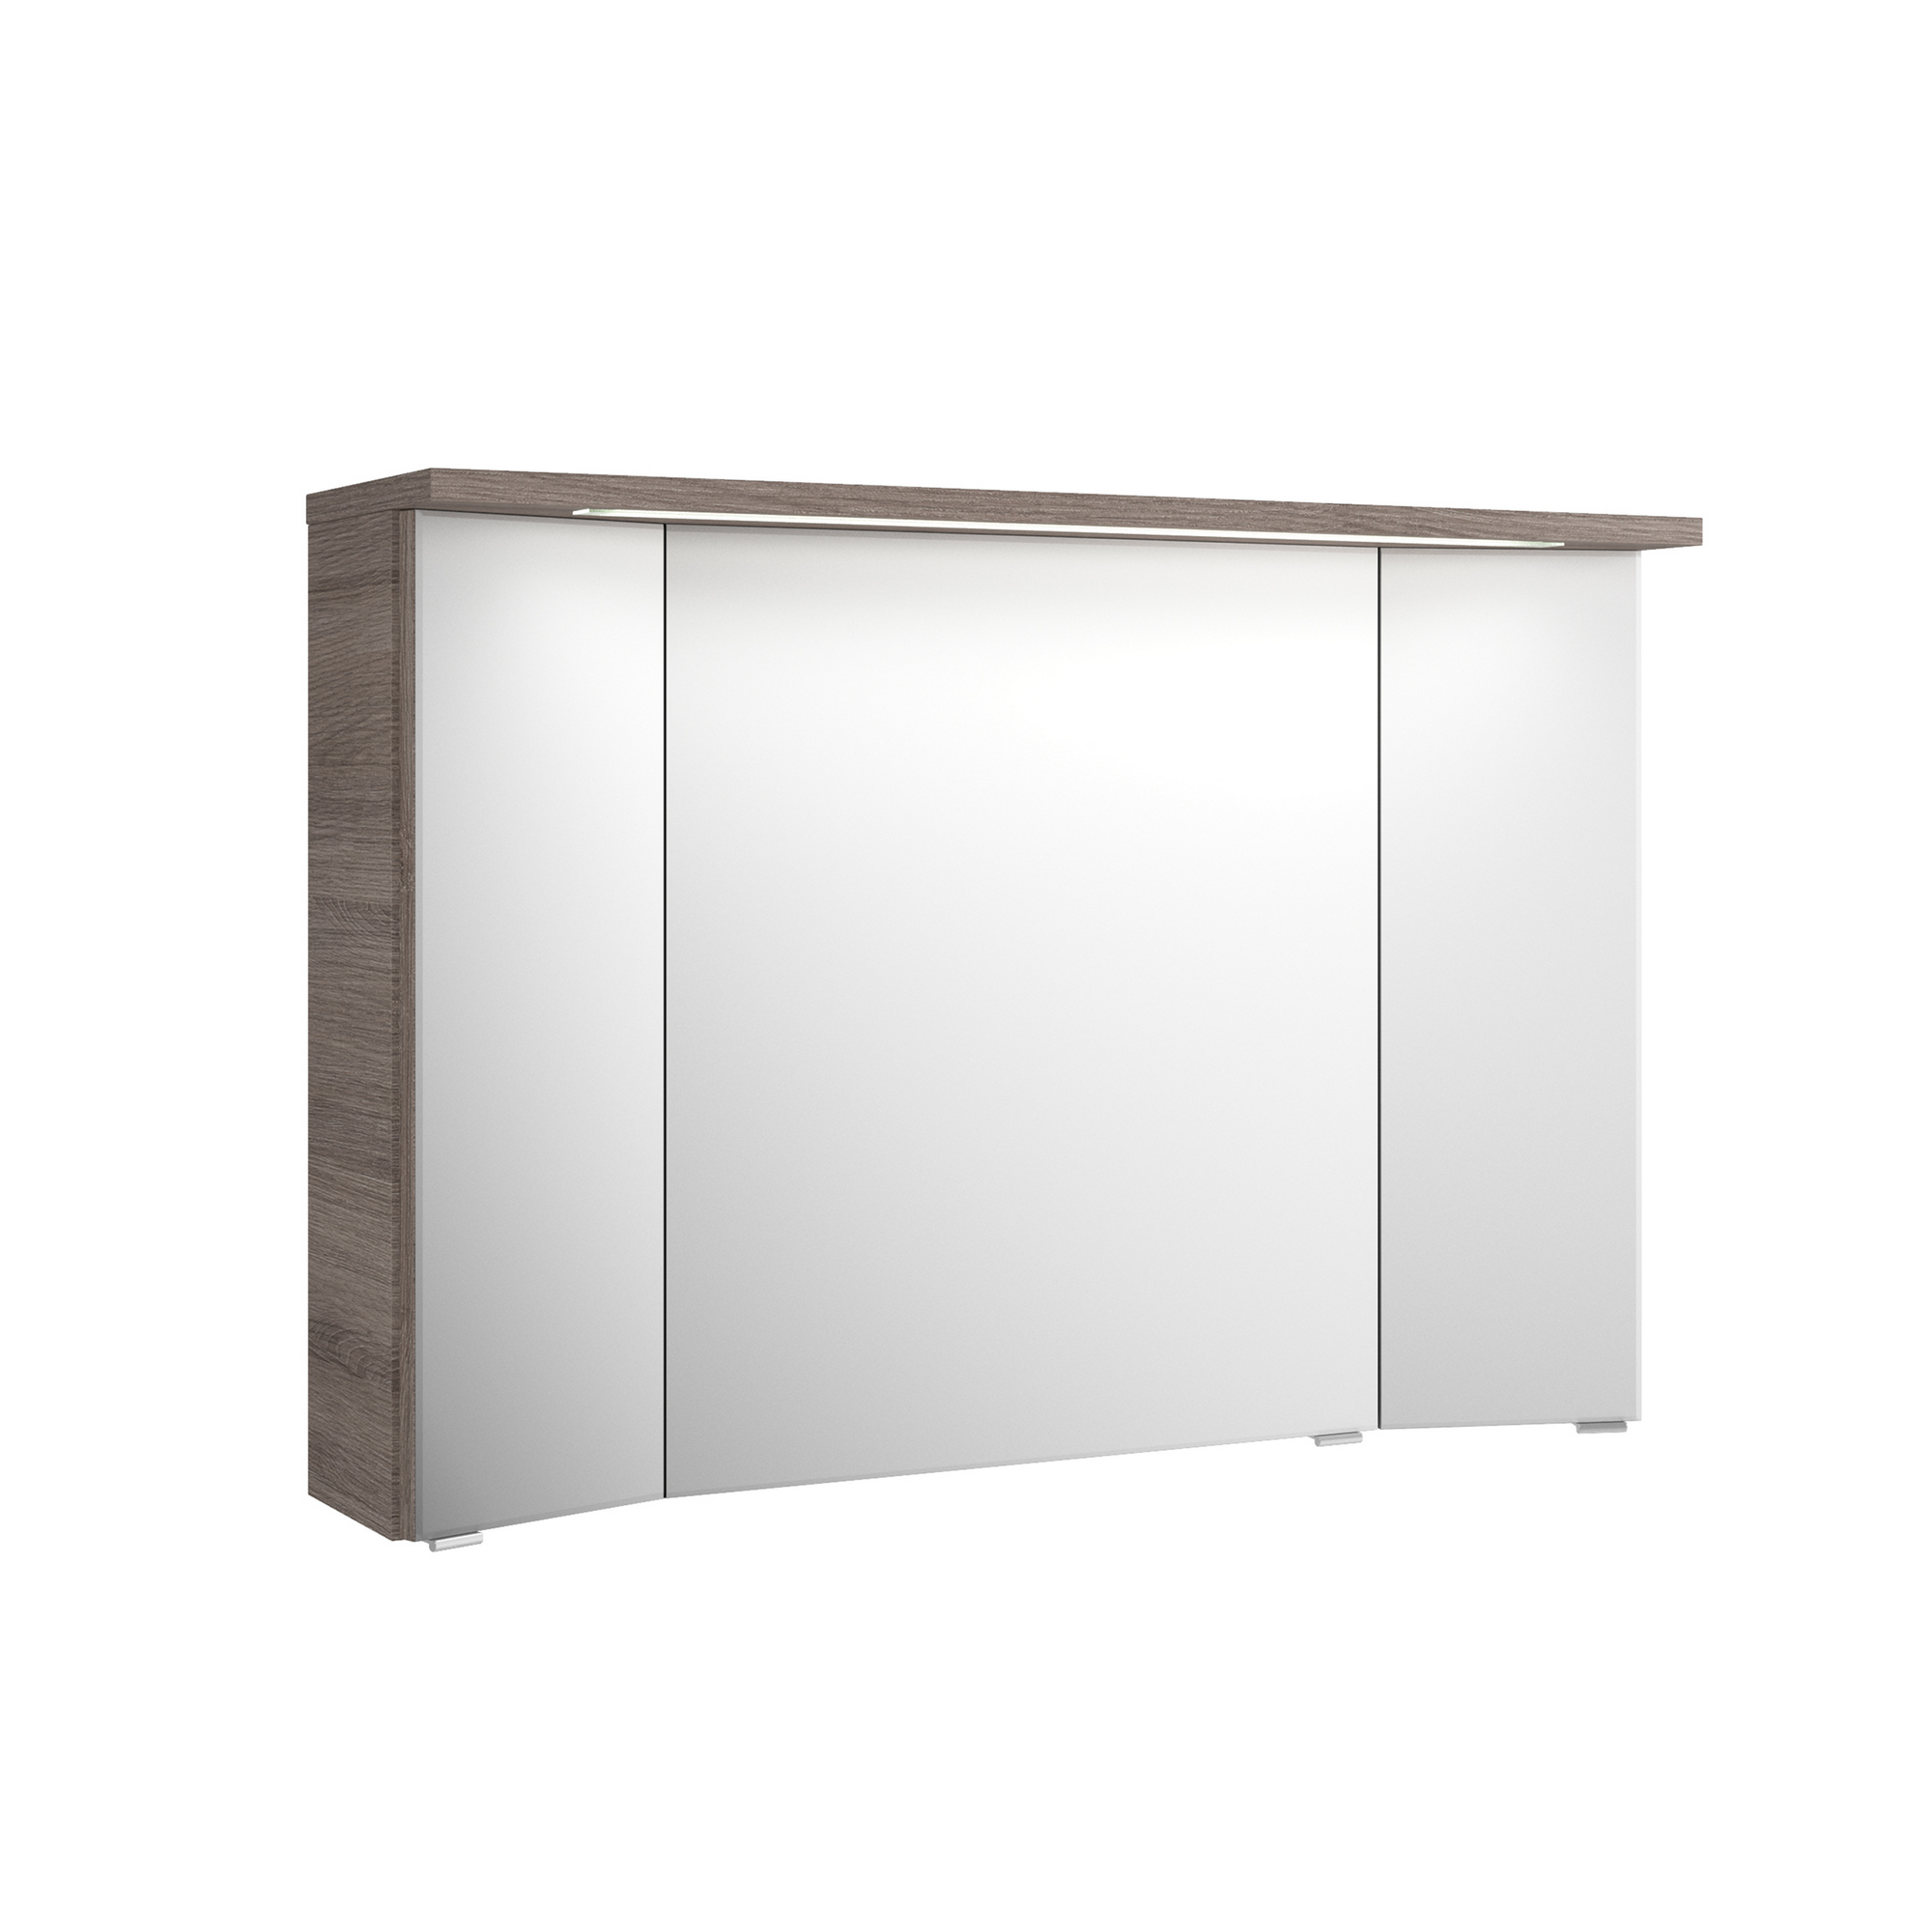 Spiegelschrank 'Primo' Sanremo Eiche 3D 105 x 72 cm mit Kranzbodenbeleuchtung + product picture